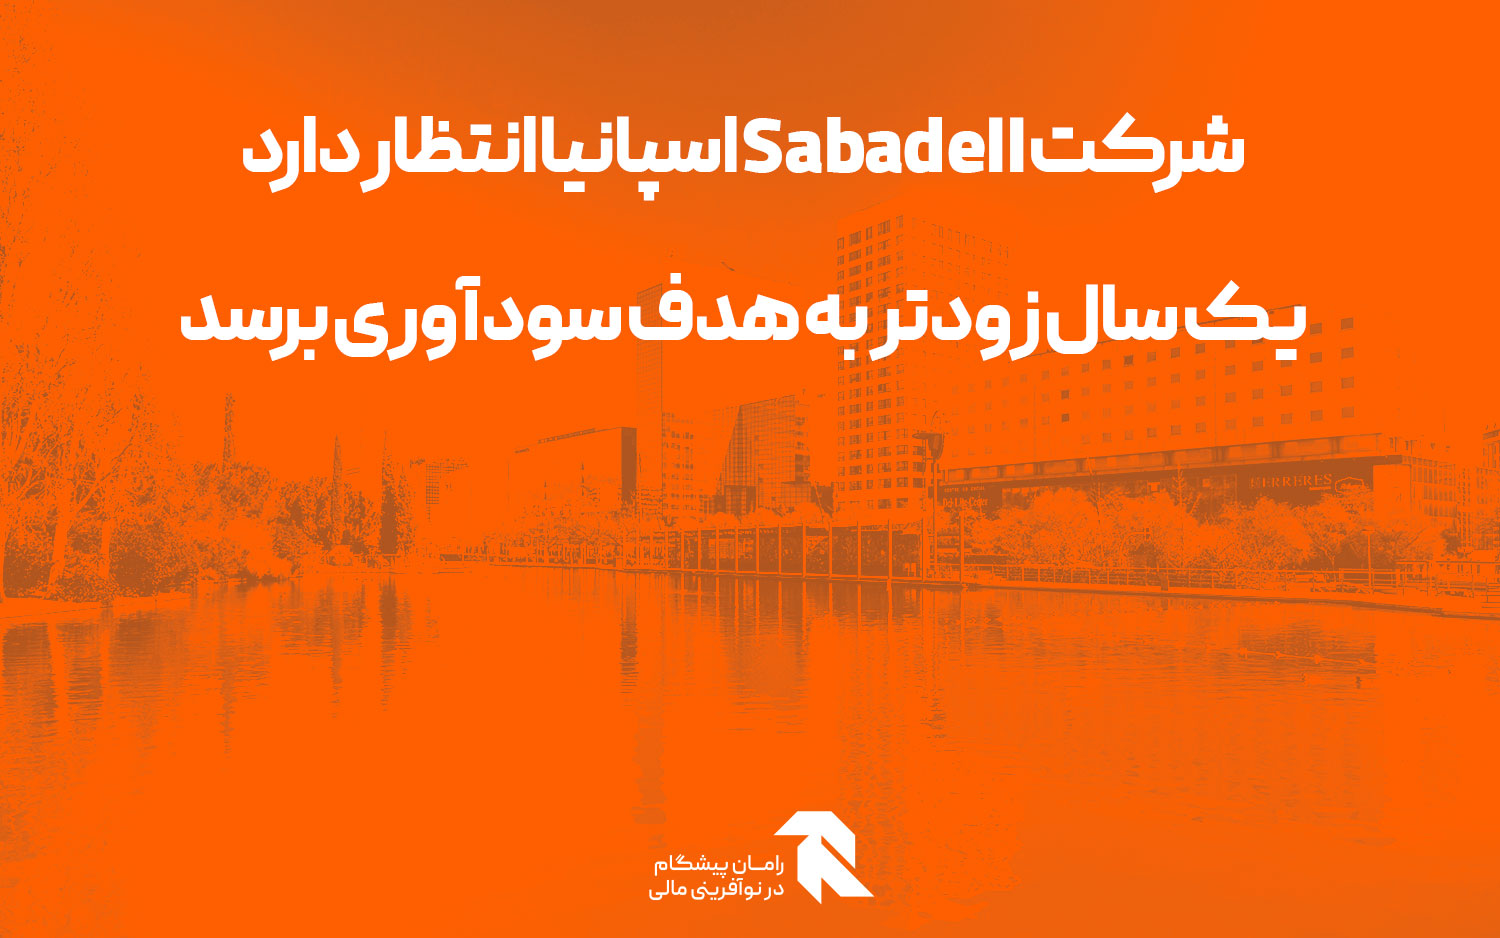 شرکت Sabadell اسپانیا انتظار دارد یک سال زودتر به هدف سودآوری برسد